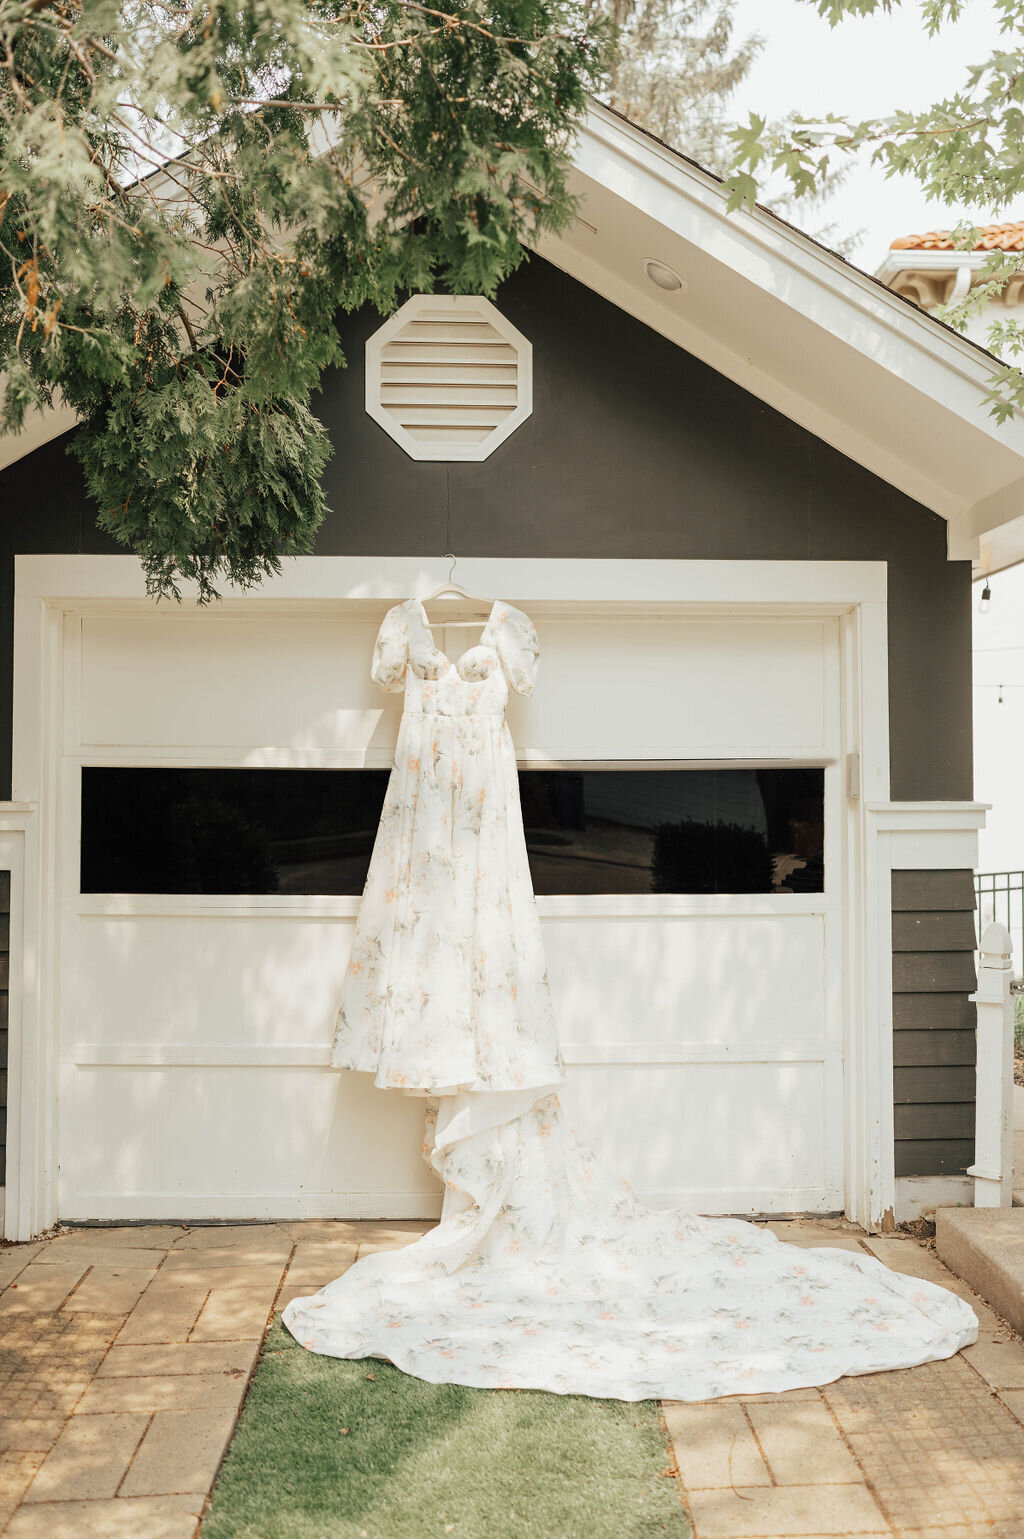 Floral backyard wedding dress hanging on garage